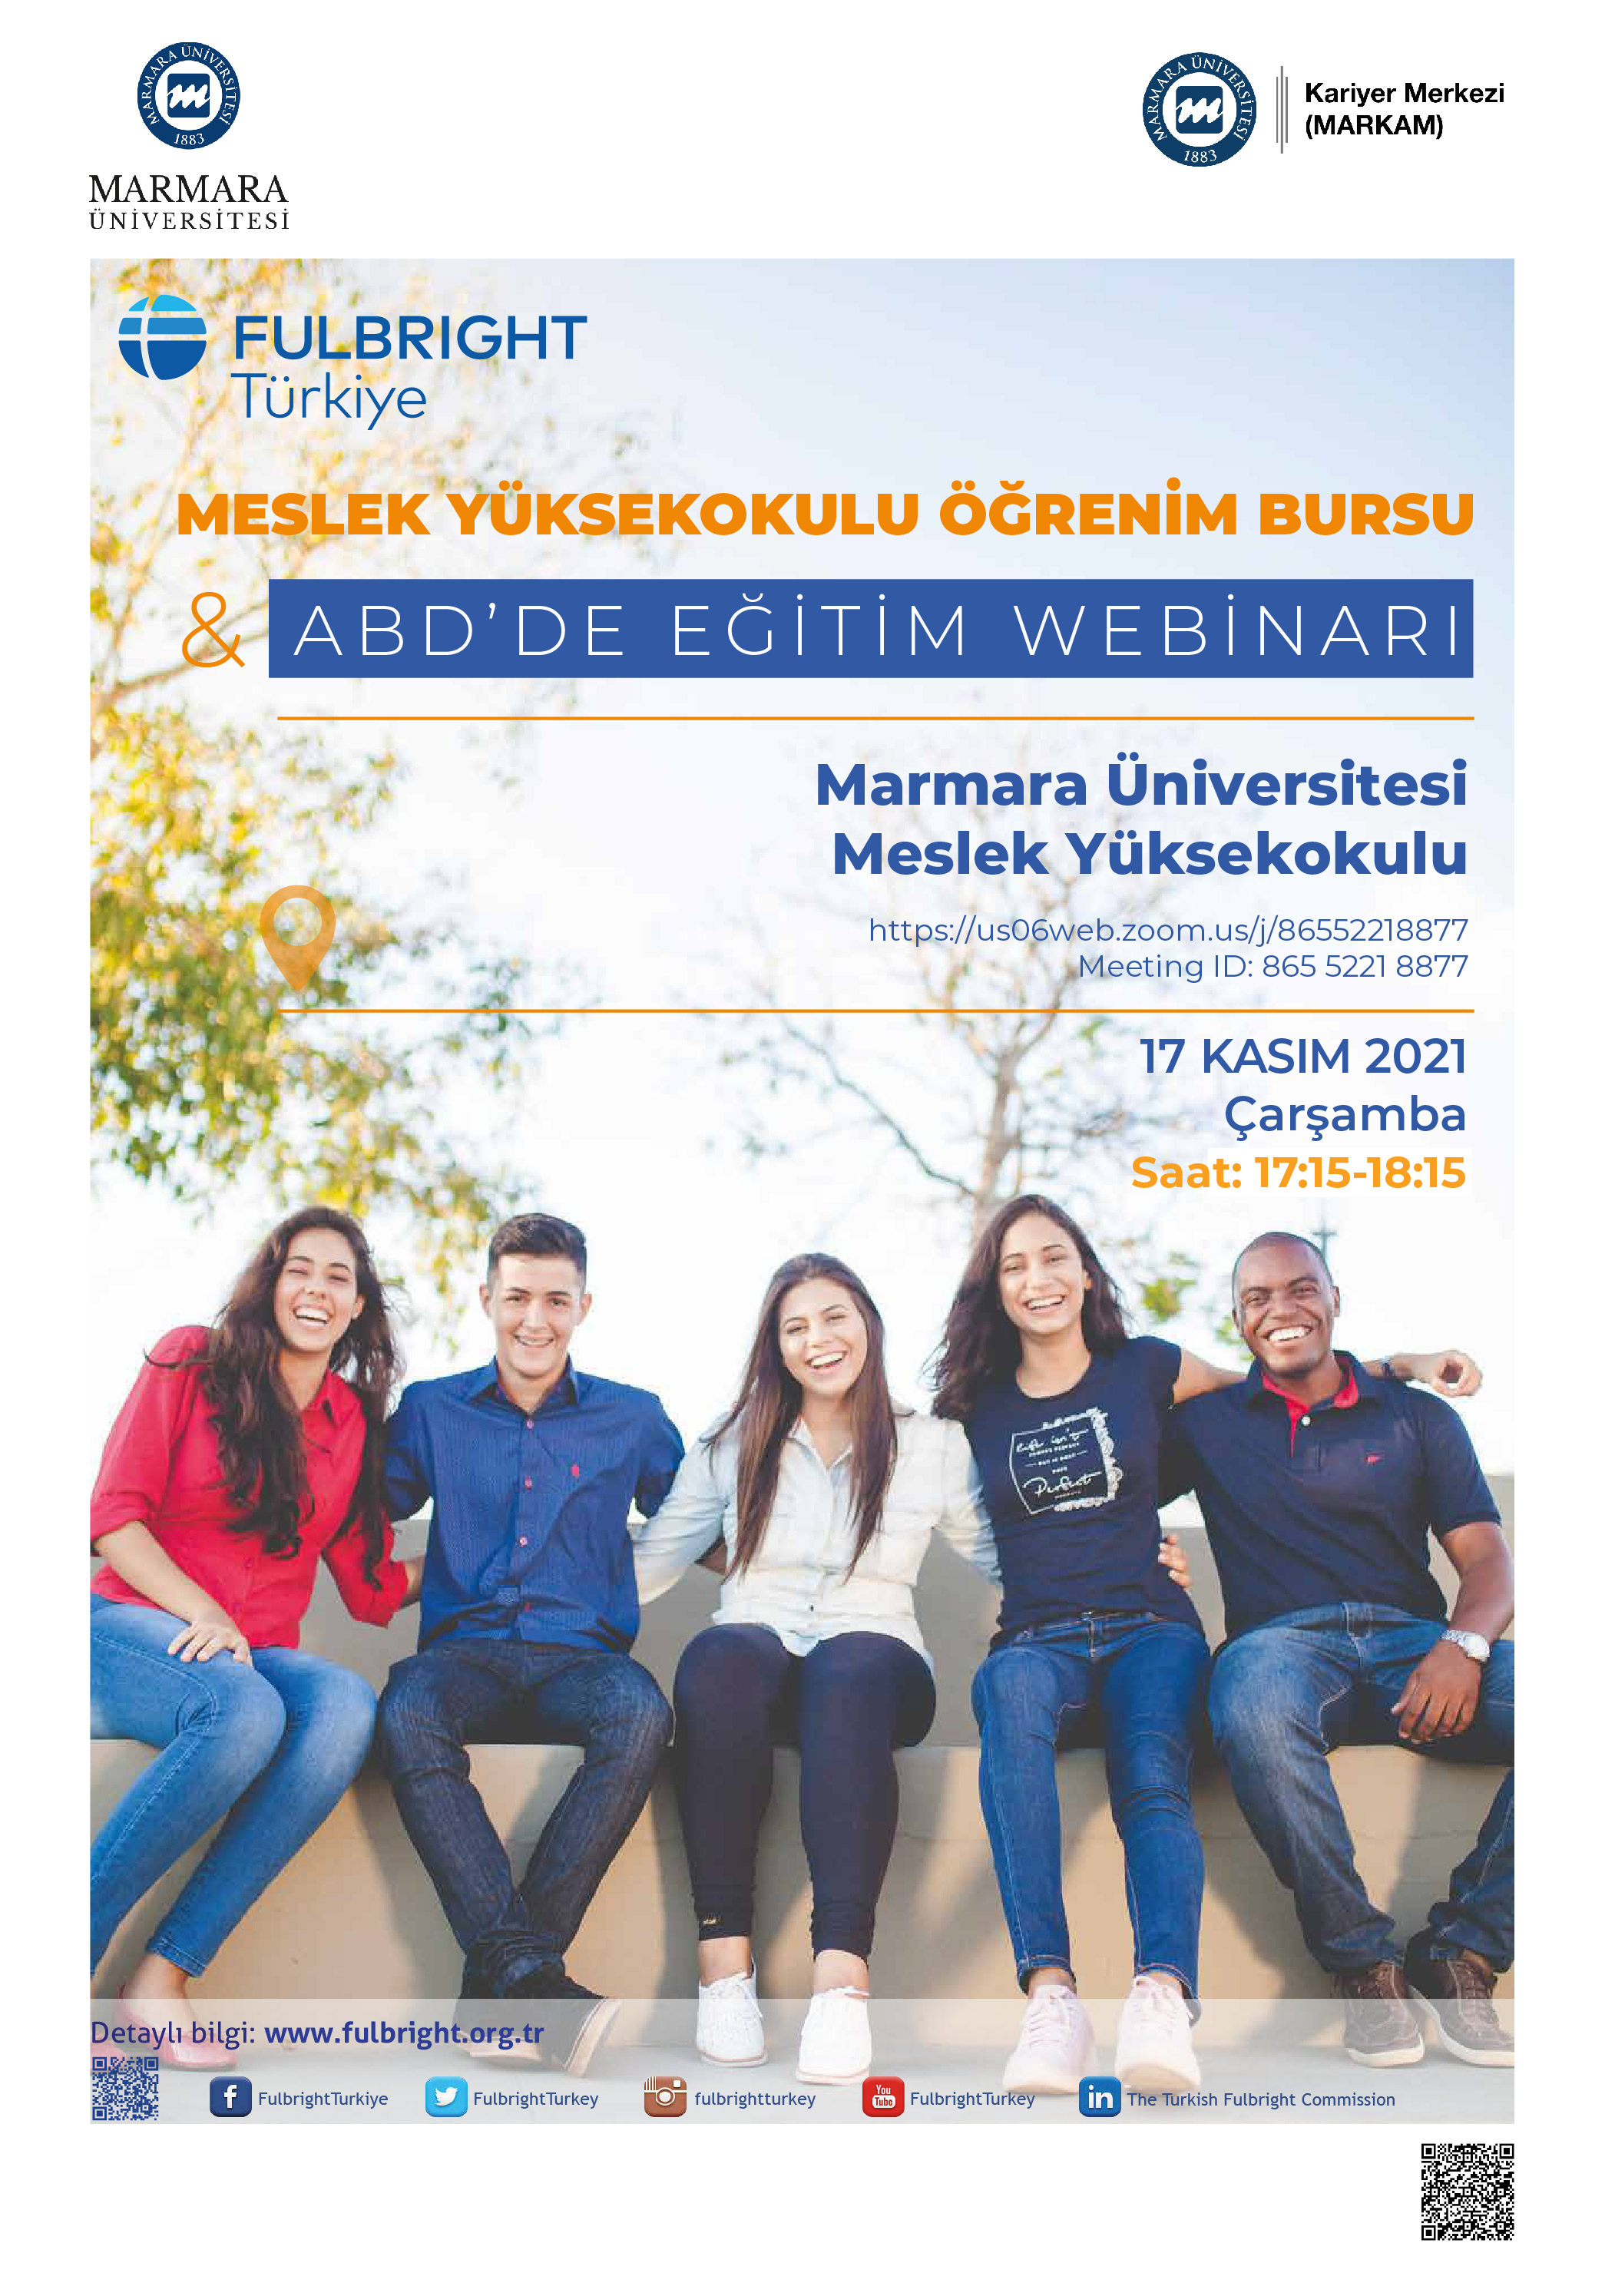 Fulbright Türkiye Yüksekokul Öğrenim Bursu&ABD'de Eğitim Webinarı 17.11.2021.jpg (975 KB)